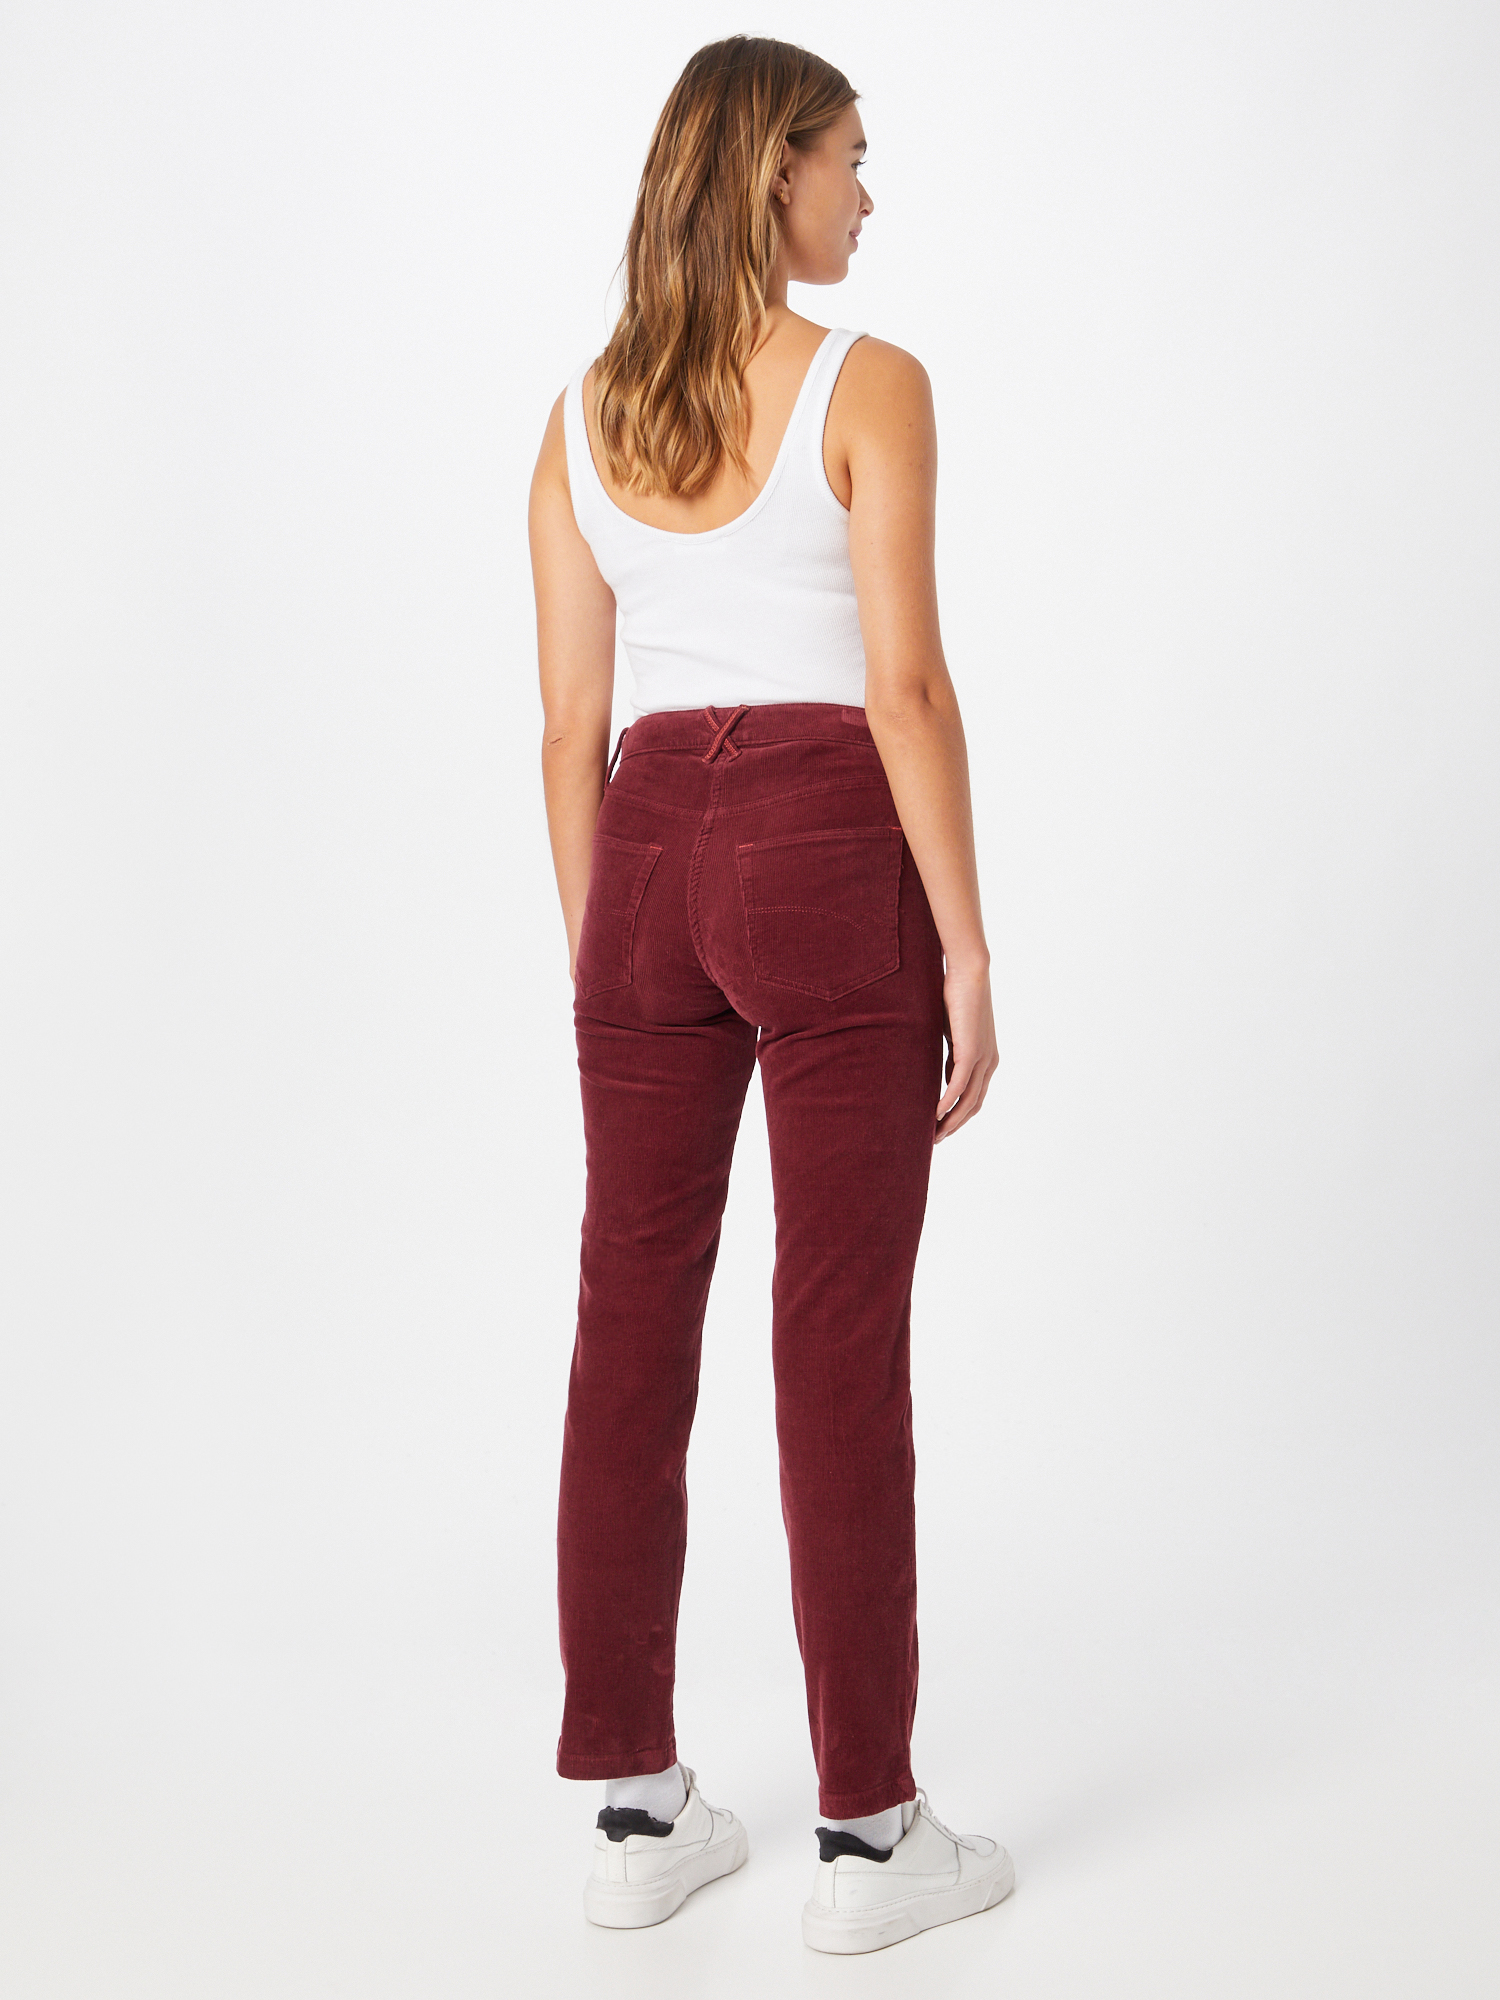 Abbigliamento Donna WHITE STUFF Pantaloni in Rosso Vino 